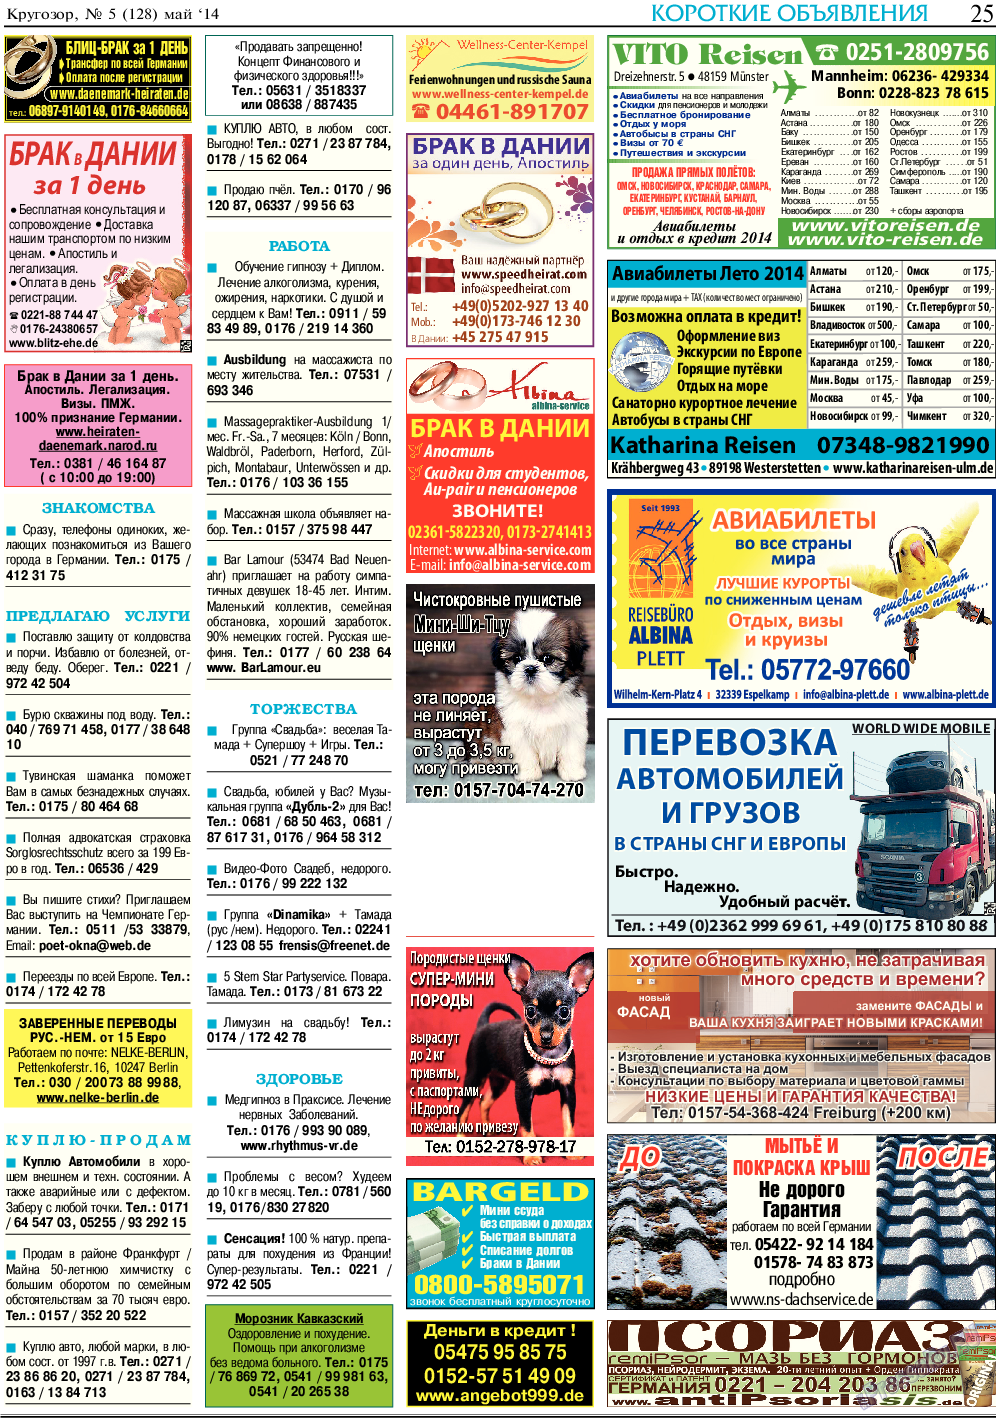 Кругозор, газета. 2014 №5 стр.25